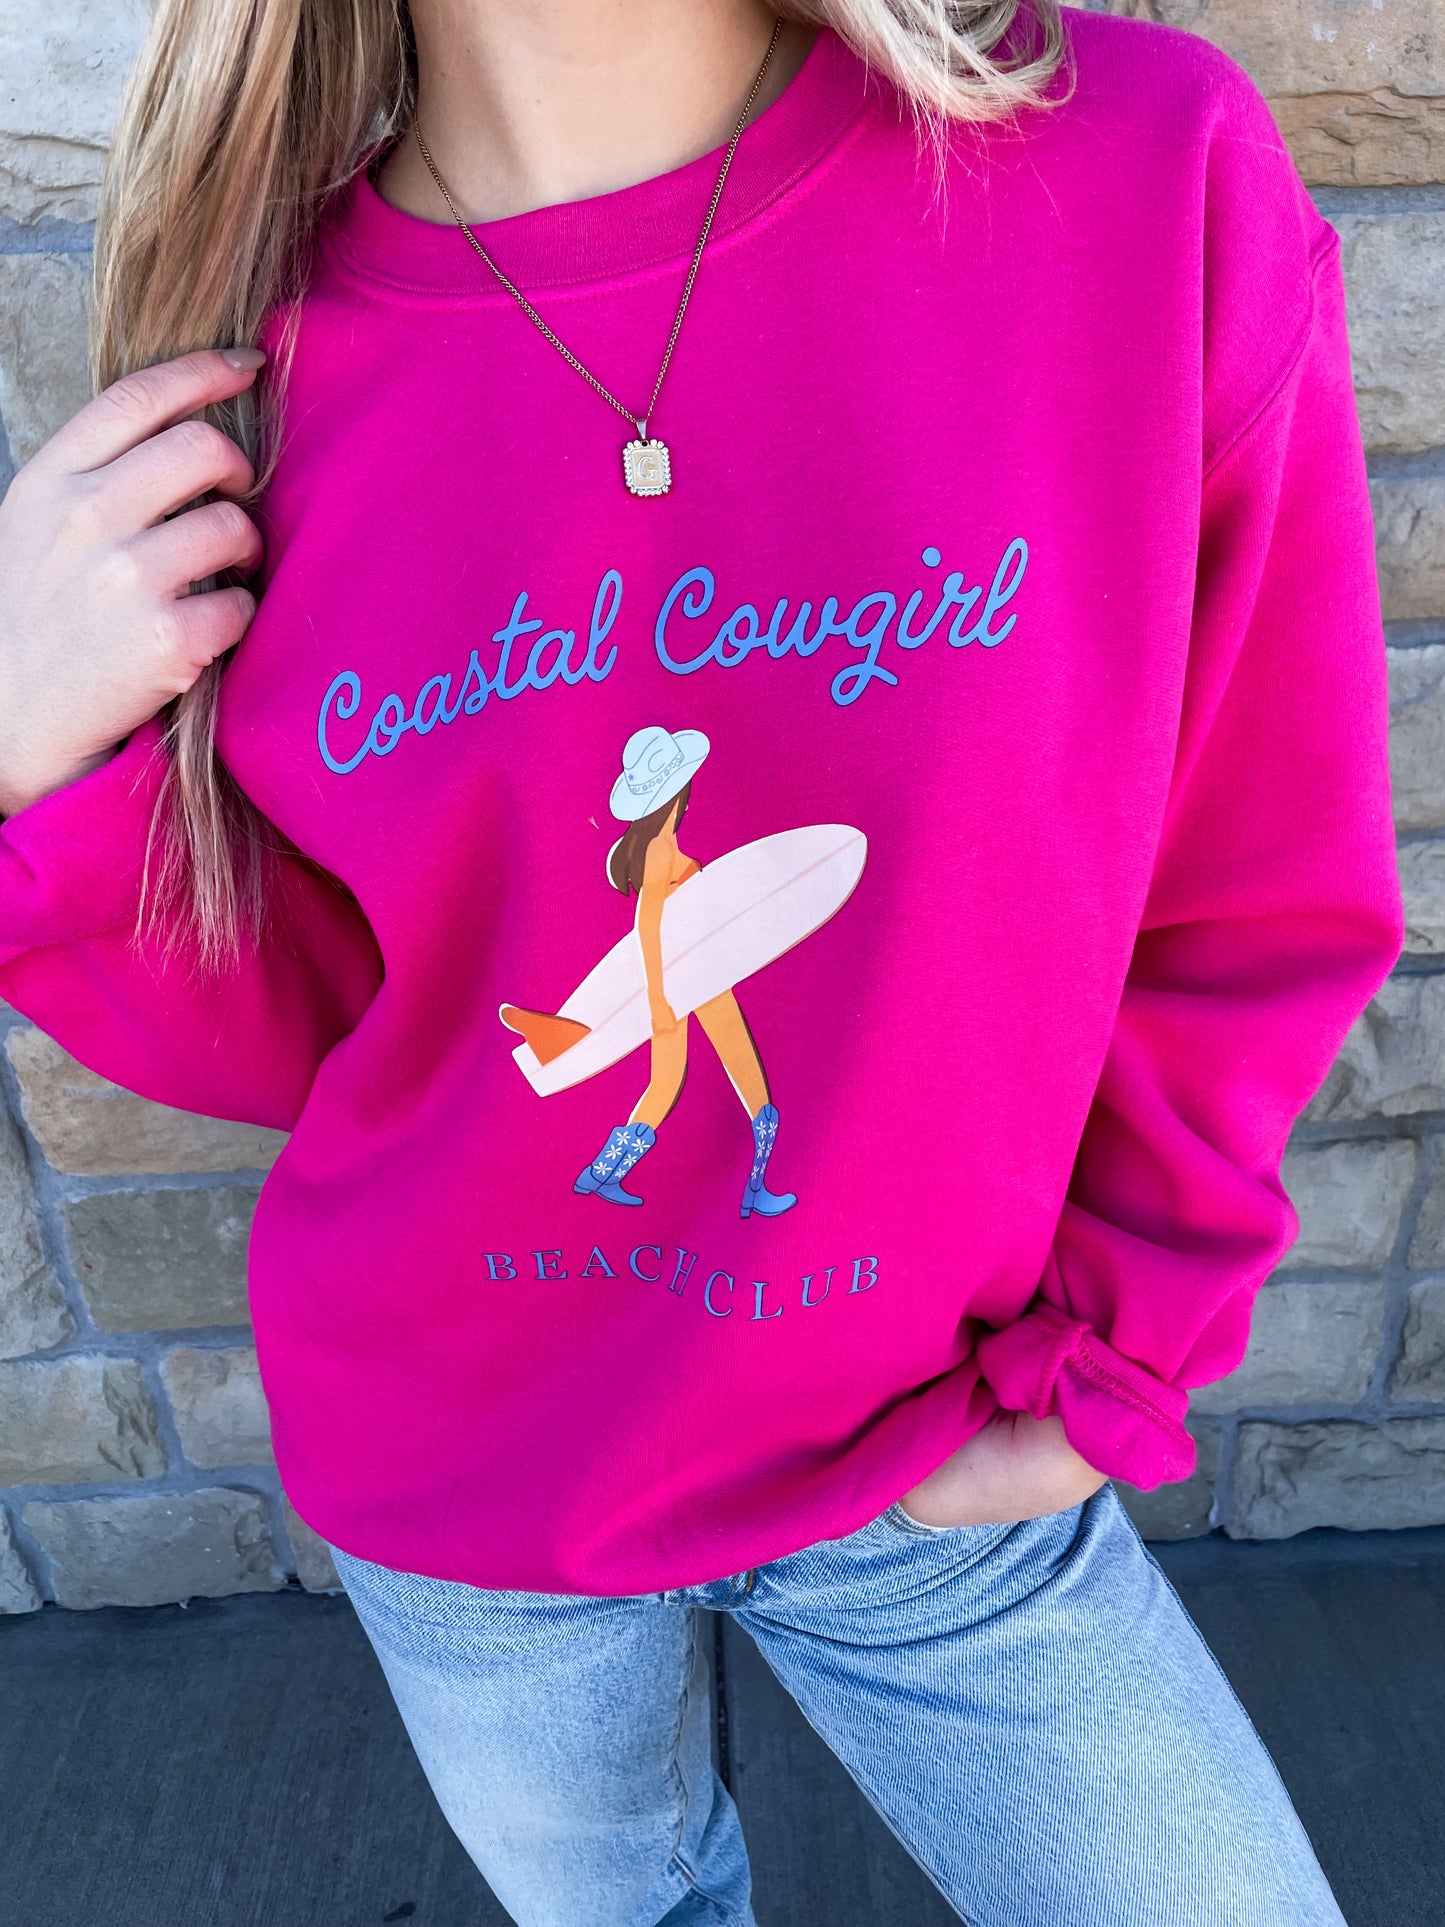 Coastal Cowgirl Sweatshirt